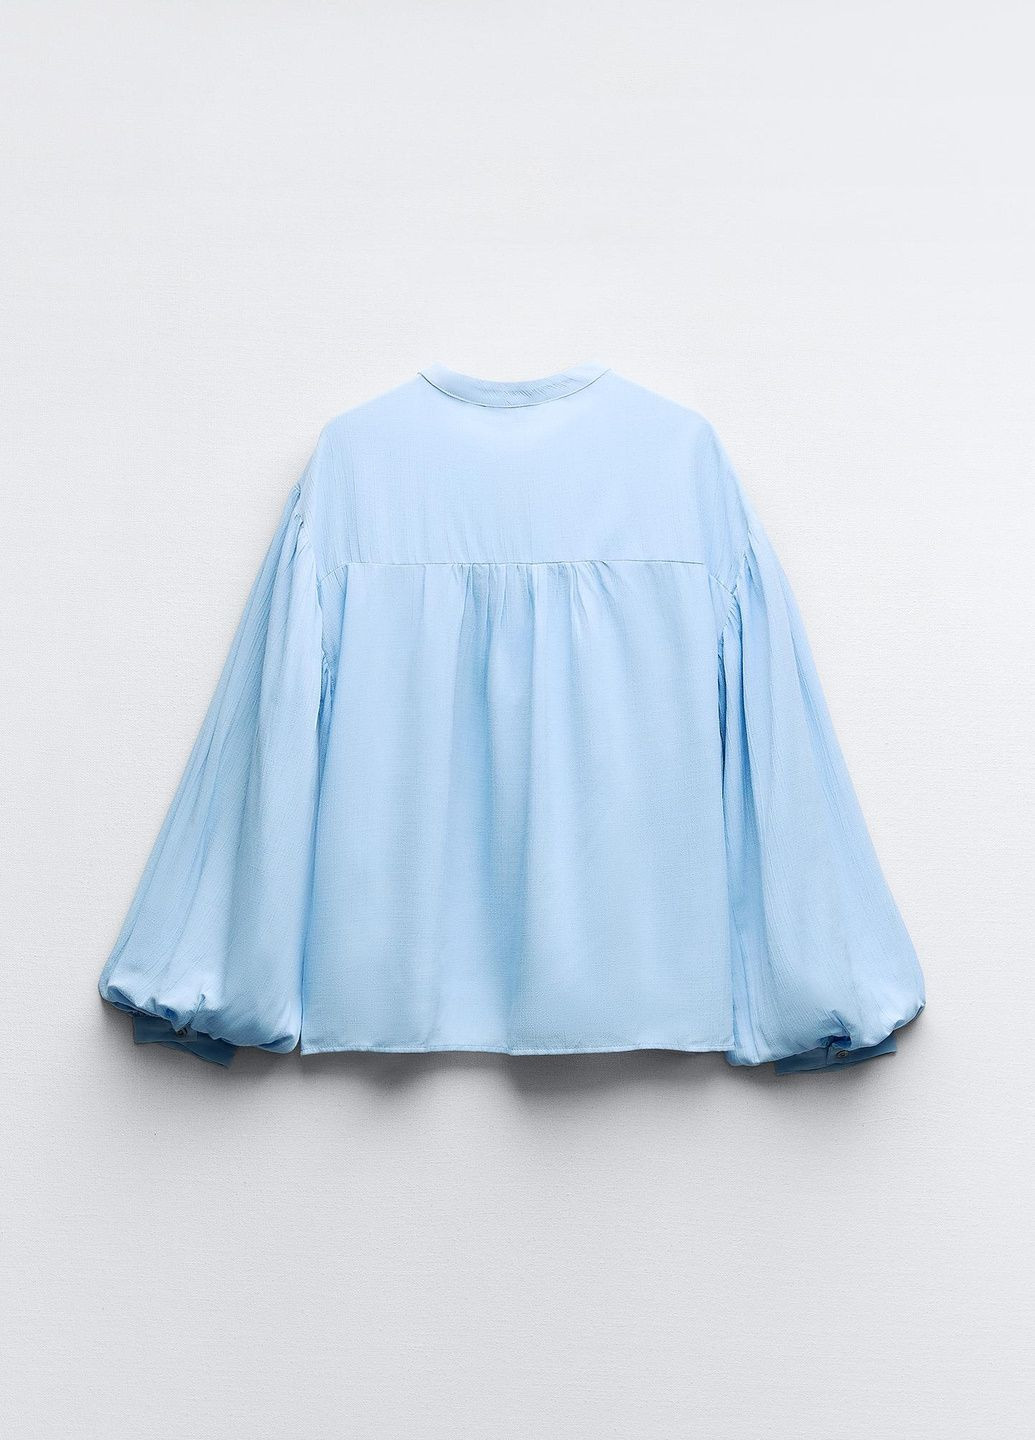 Світло-блакитна демісезонна блузка Zara